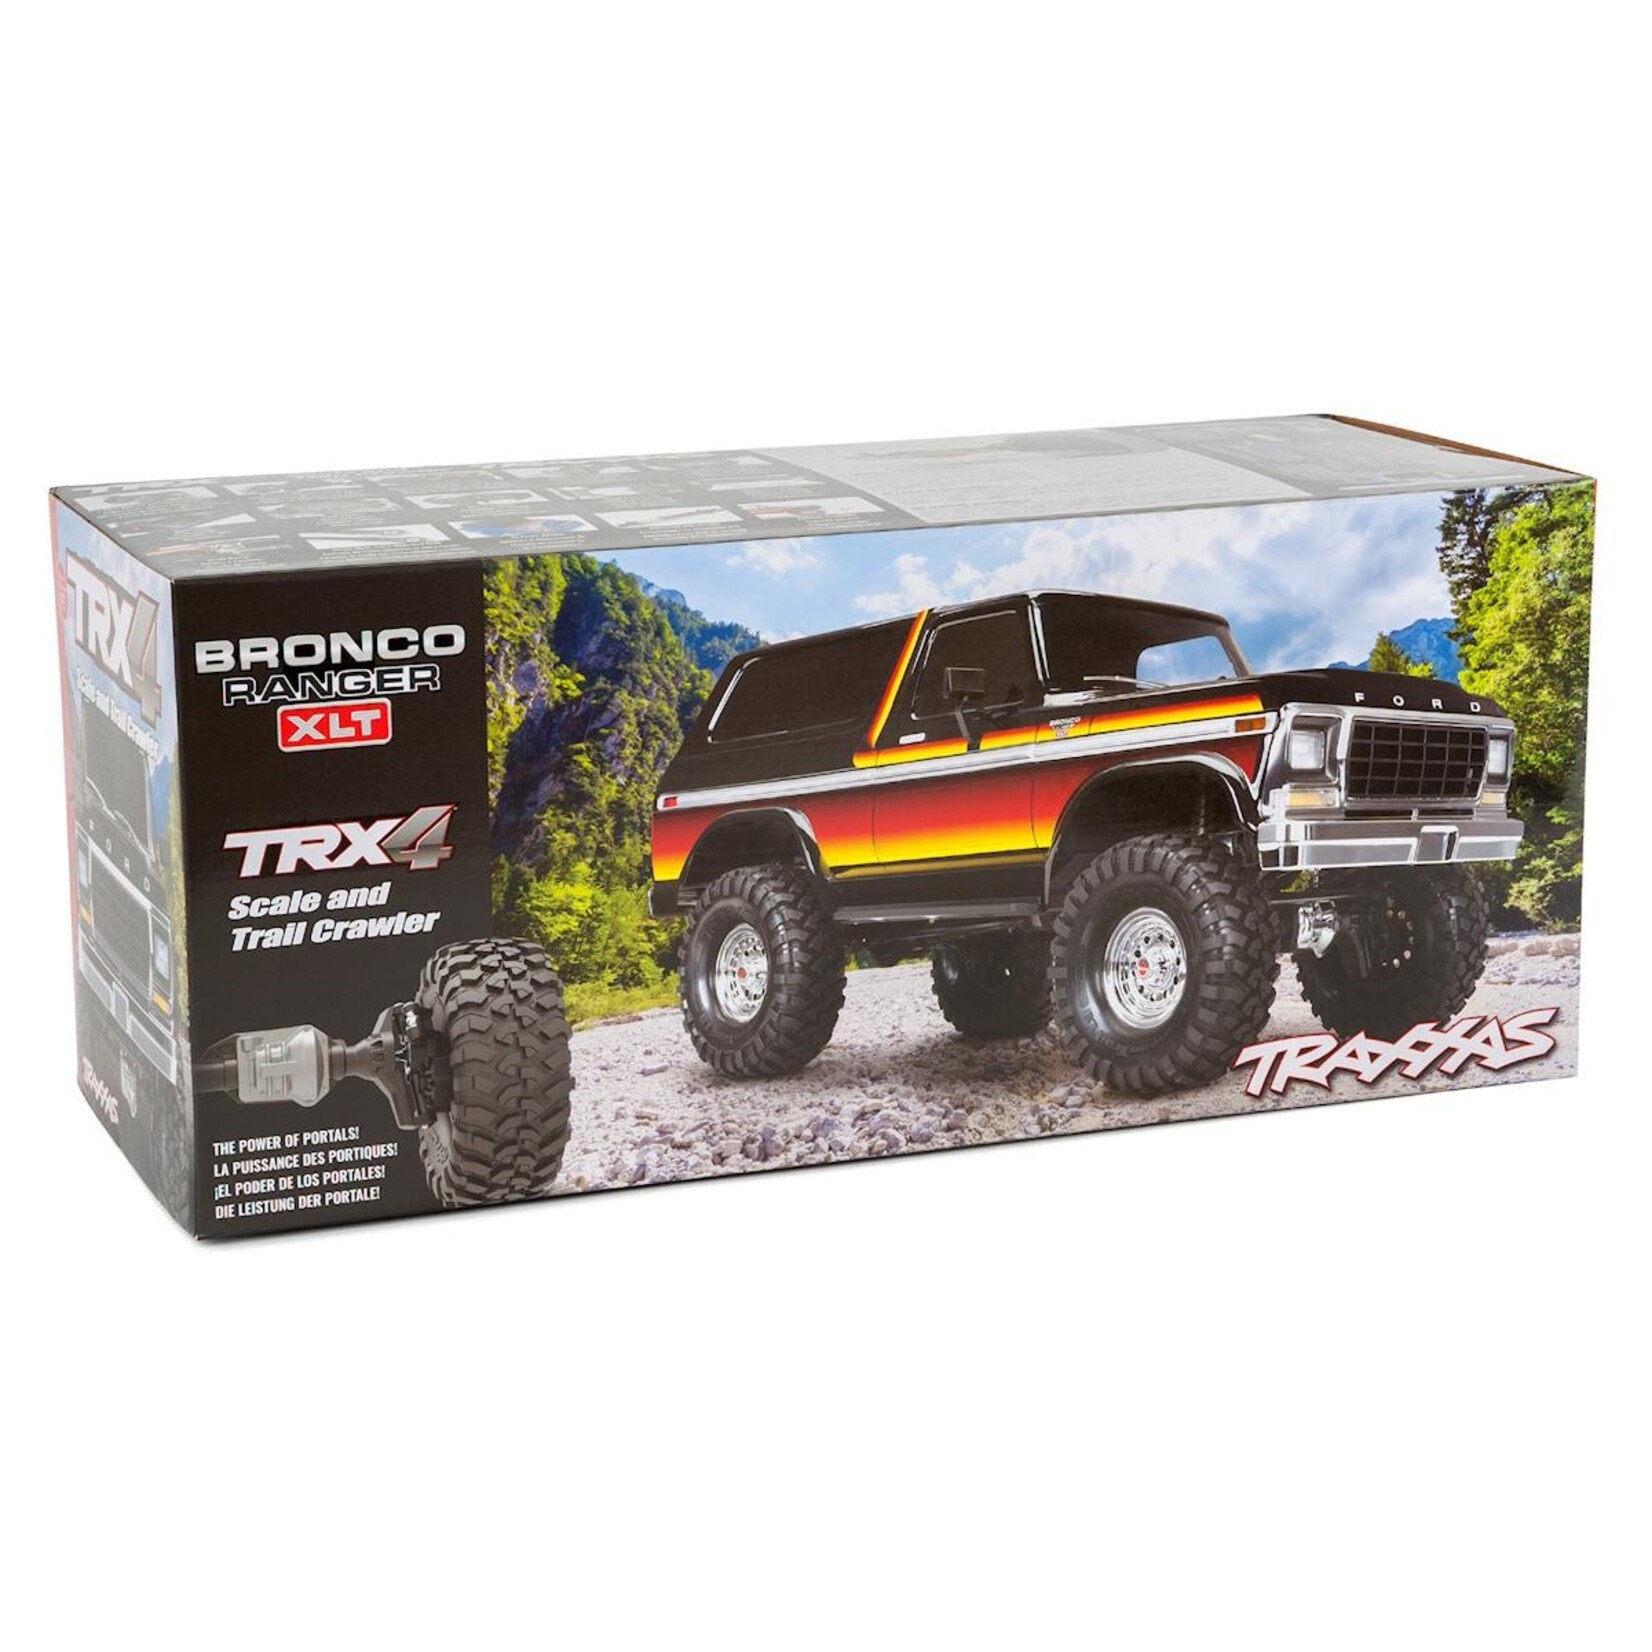 Traxxas Traxxas TRX-4 1/10 Trail Crawler Truck w/'79 Bronco Ranger XLT Body (Sunset) w/TQi 2.4GHz Radio #82046-4-SUN